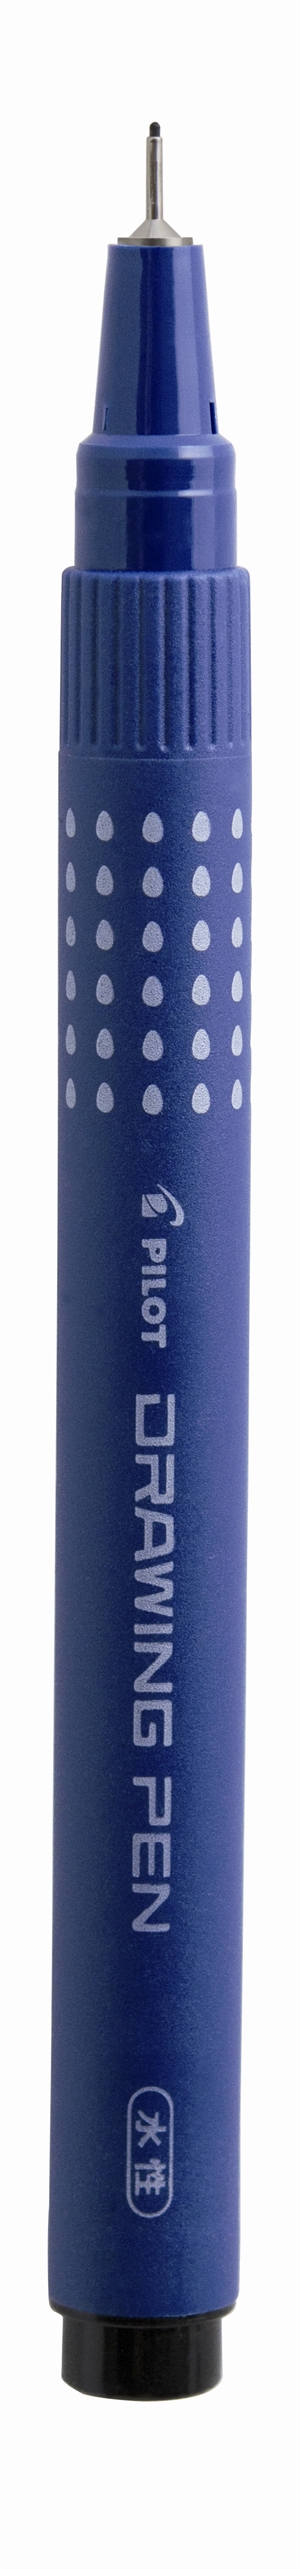 Pilot Filtpen m/hætte Drawing Pen 0,2mm sort